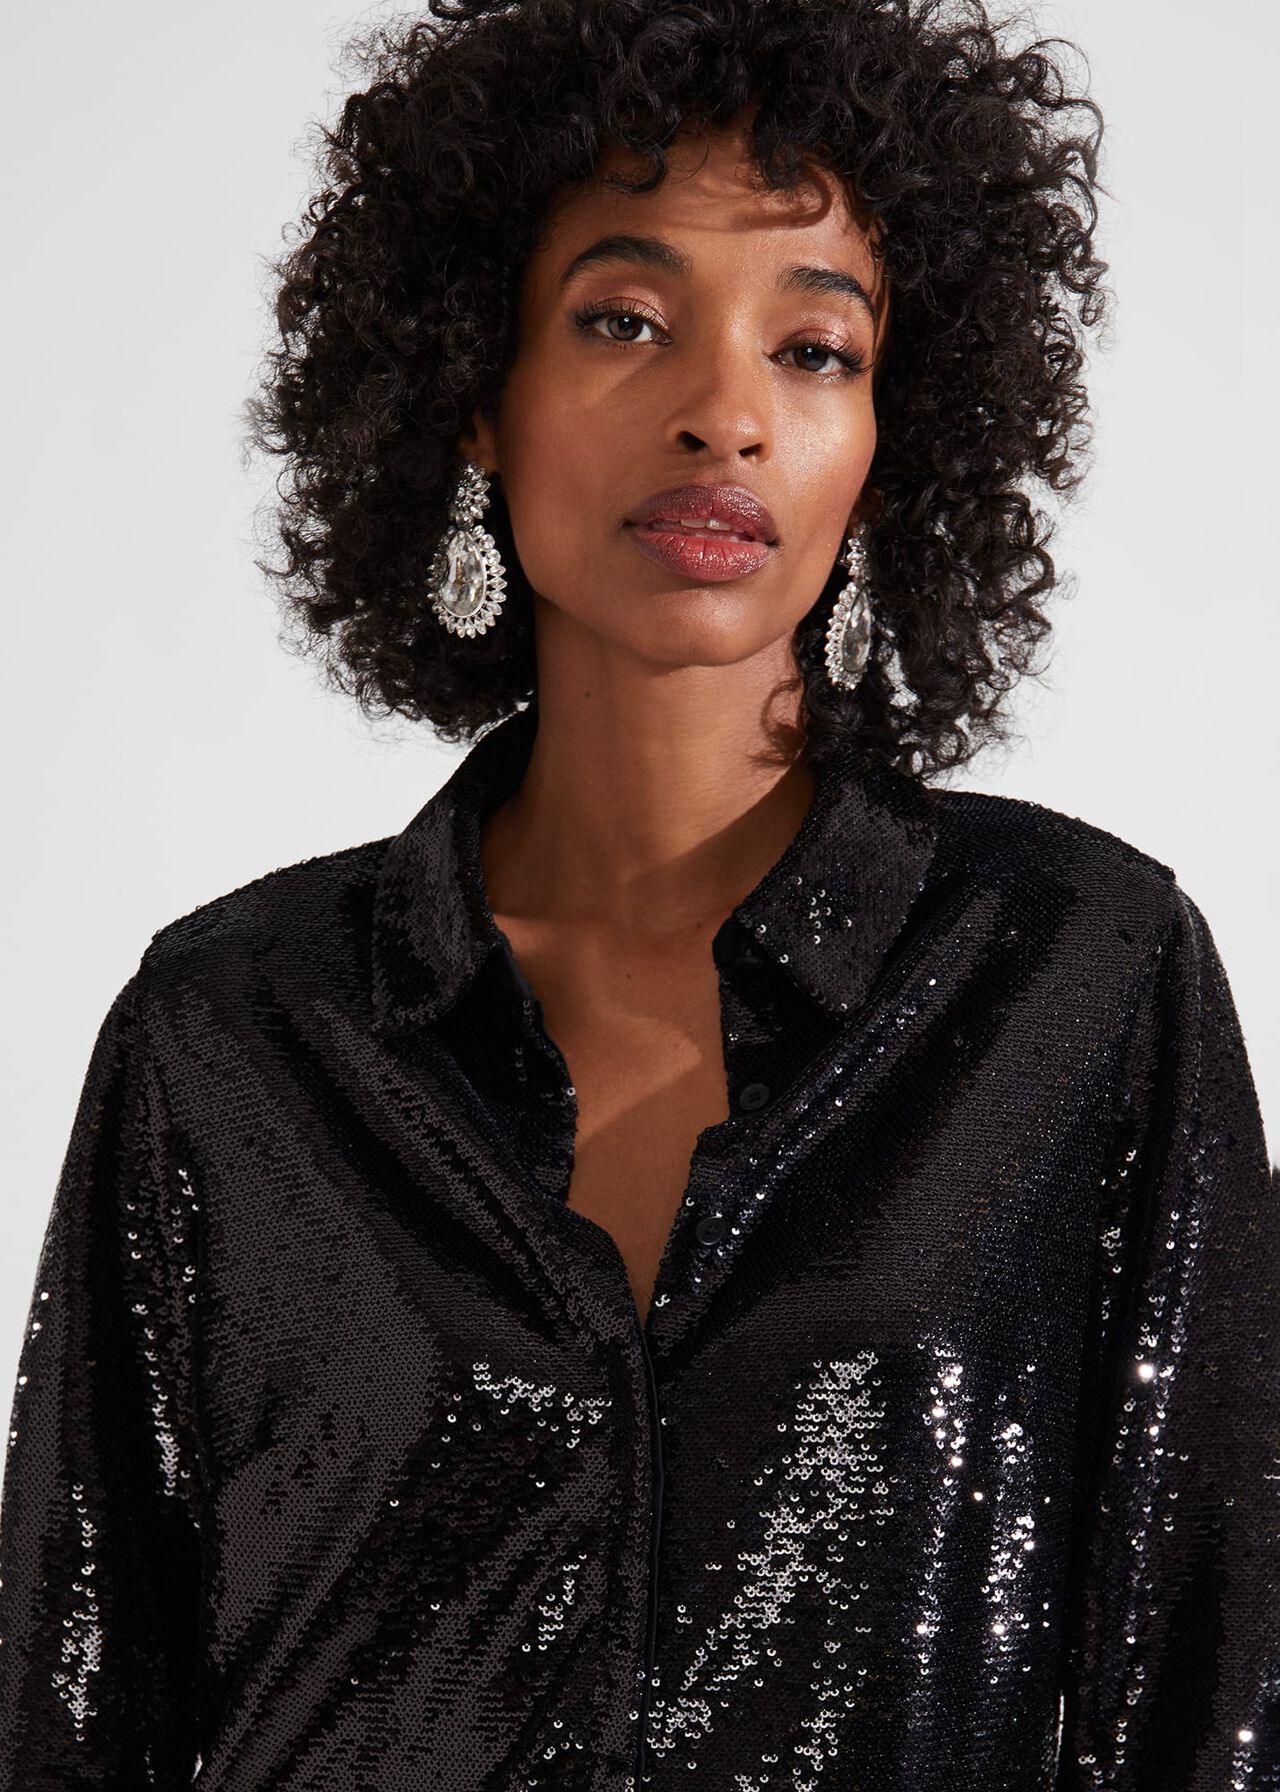 Greta Sequin Shirt, Black, hi-res